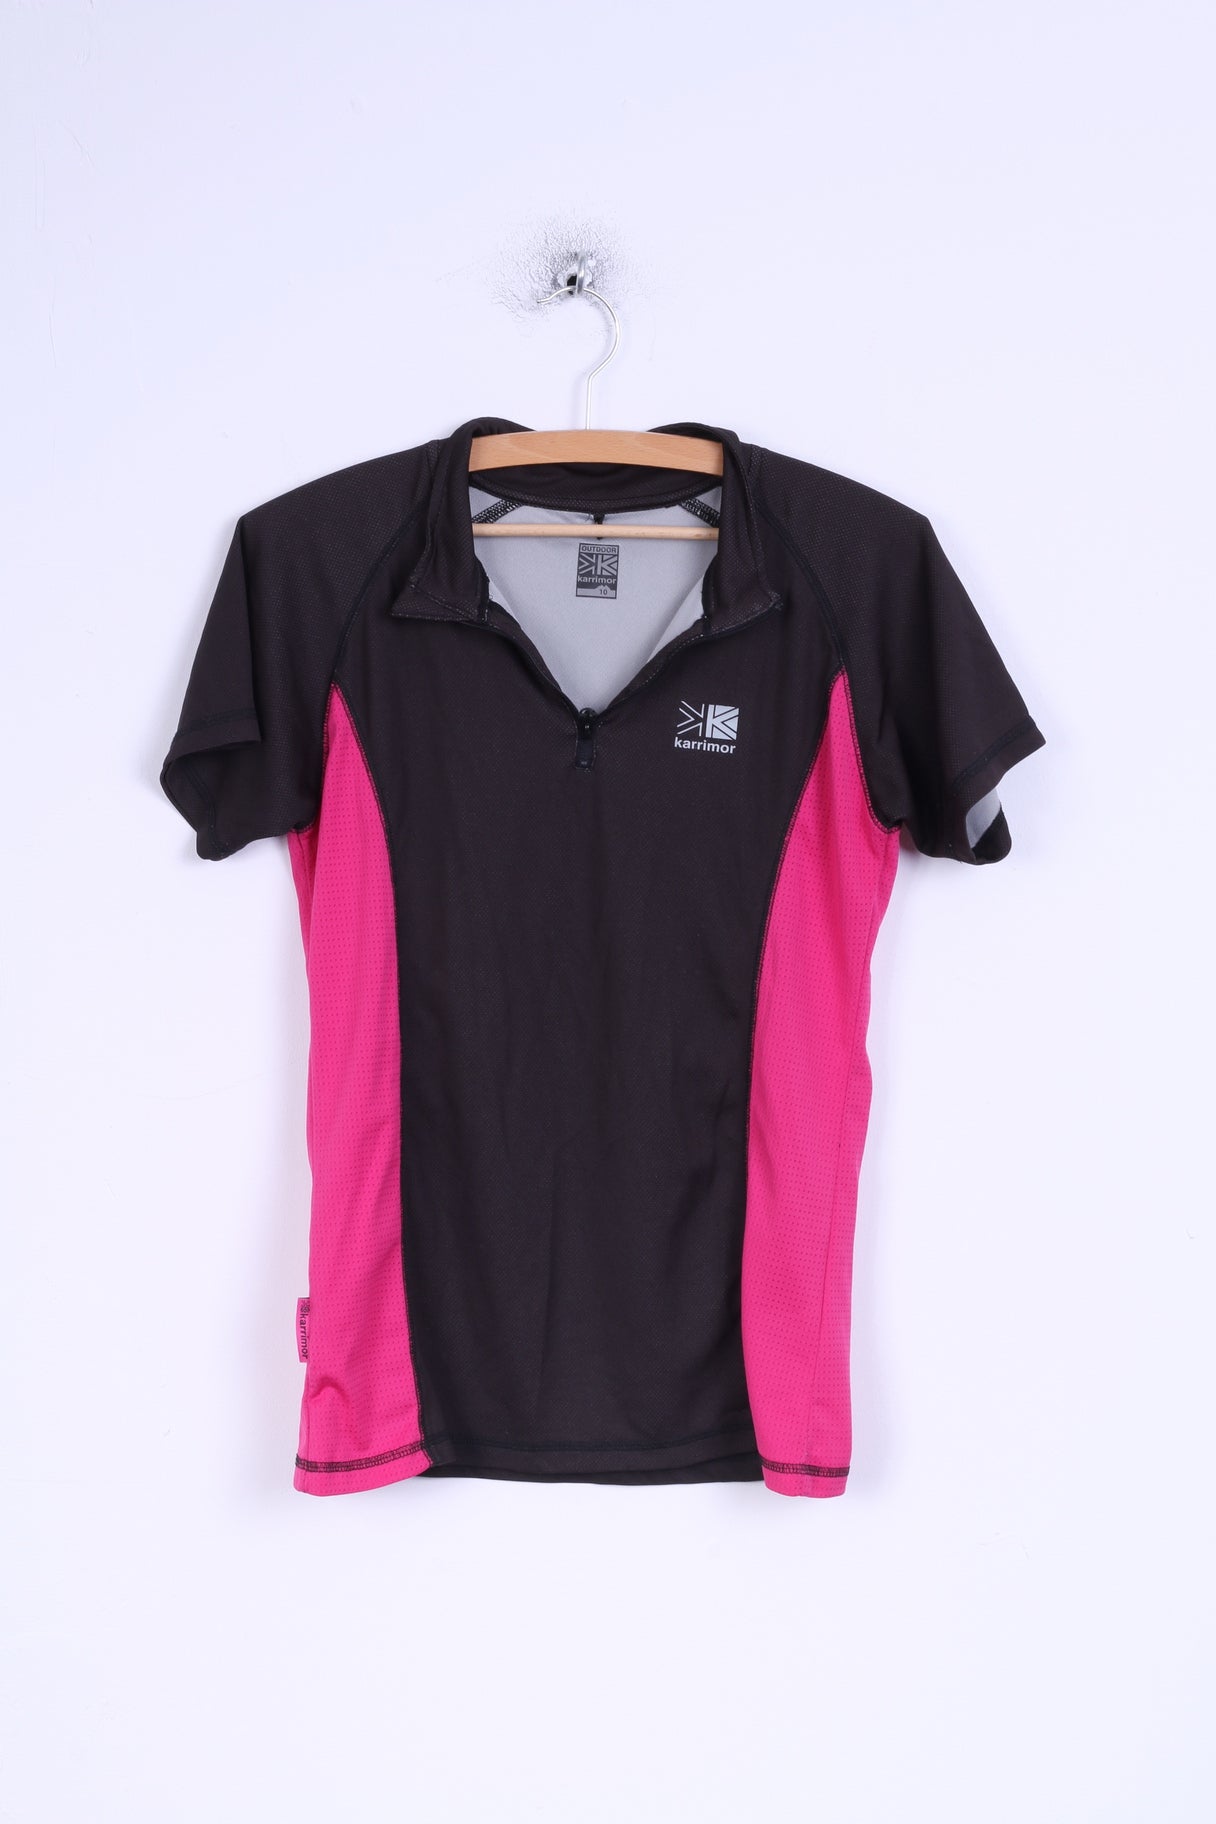 Karrimor Womens 10 M Shirt Plum Pink Zip Neck Stretch Outdoor Top Running